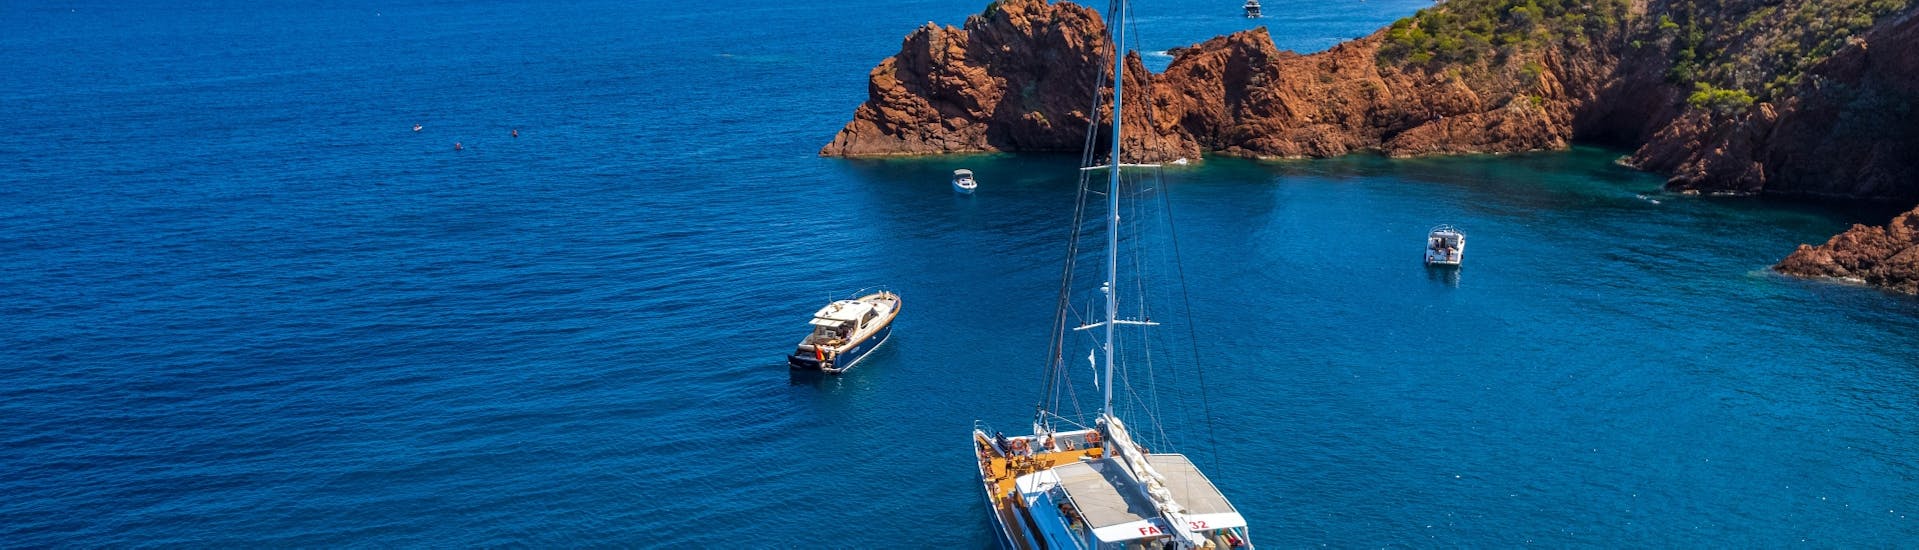 Foto scattata durante la Gita in catamarano alle Isole Lerins e al Massiccio dell'Esterel da Cannes con pranzo con Riviera Lines.